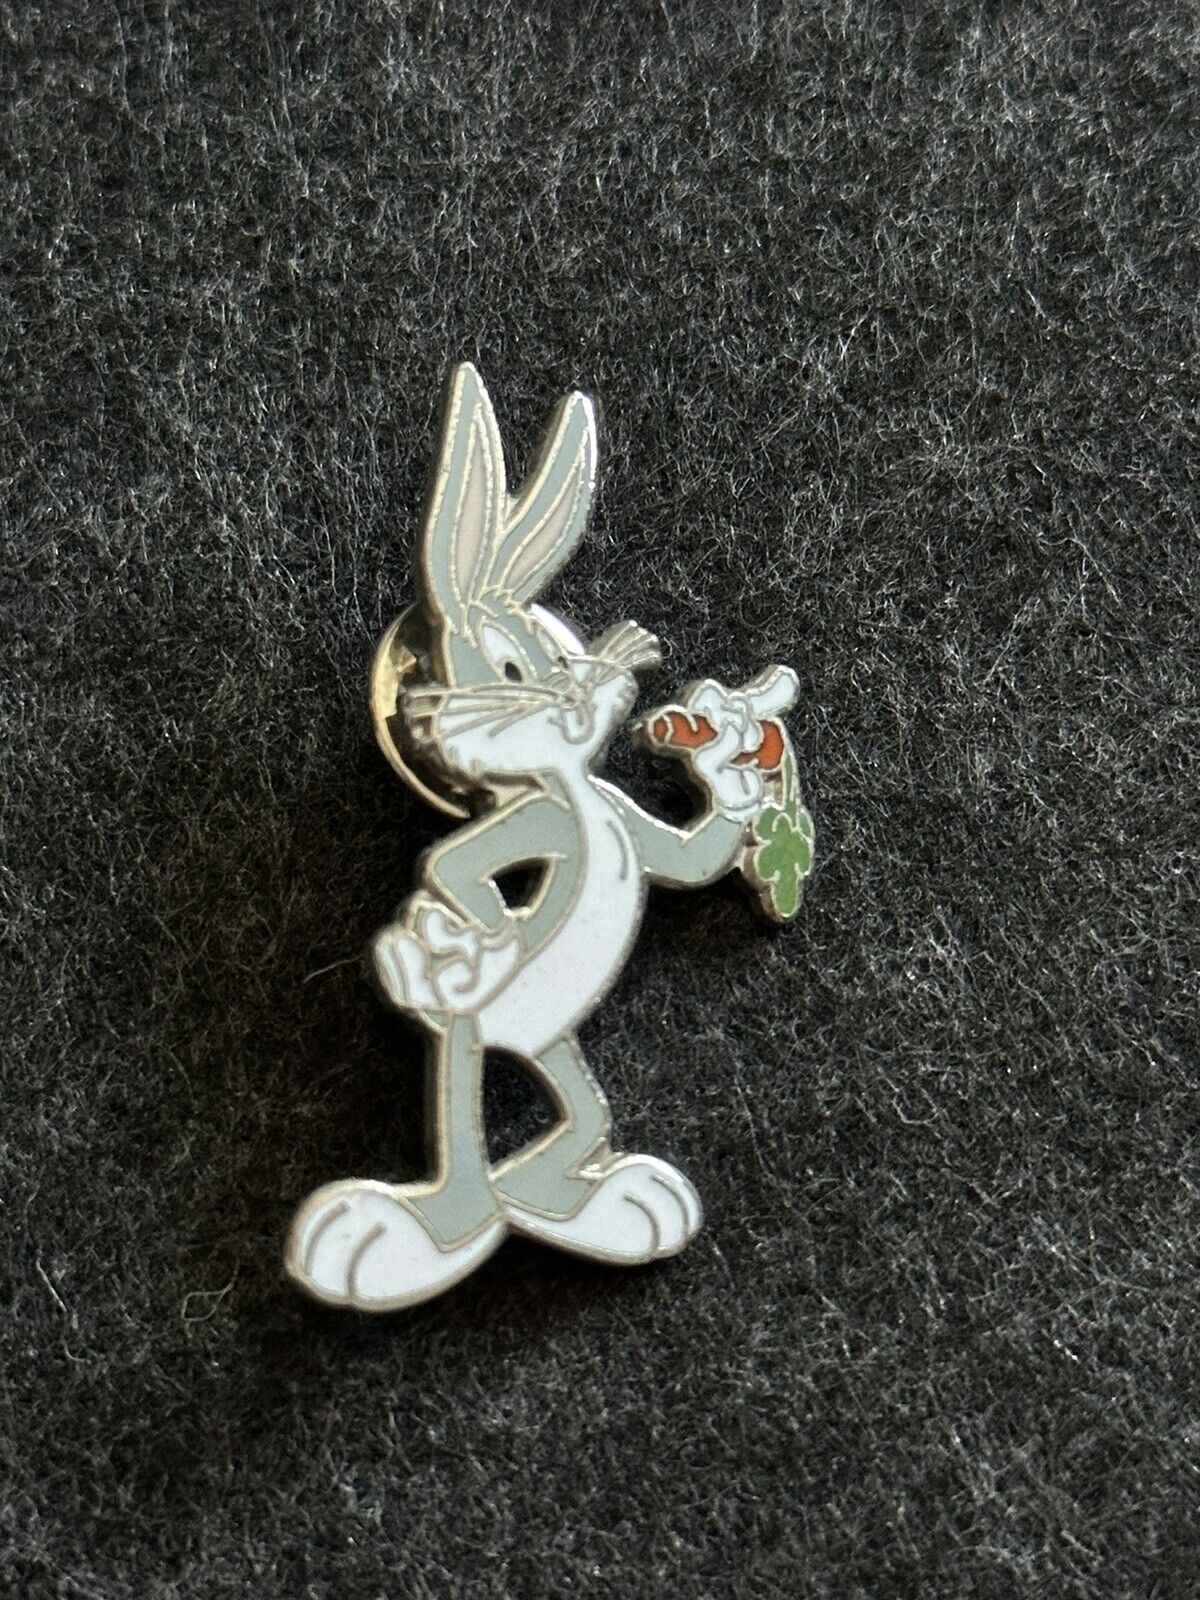 Bugs Bunny Pin 2001